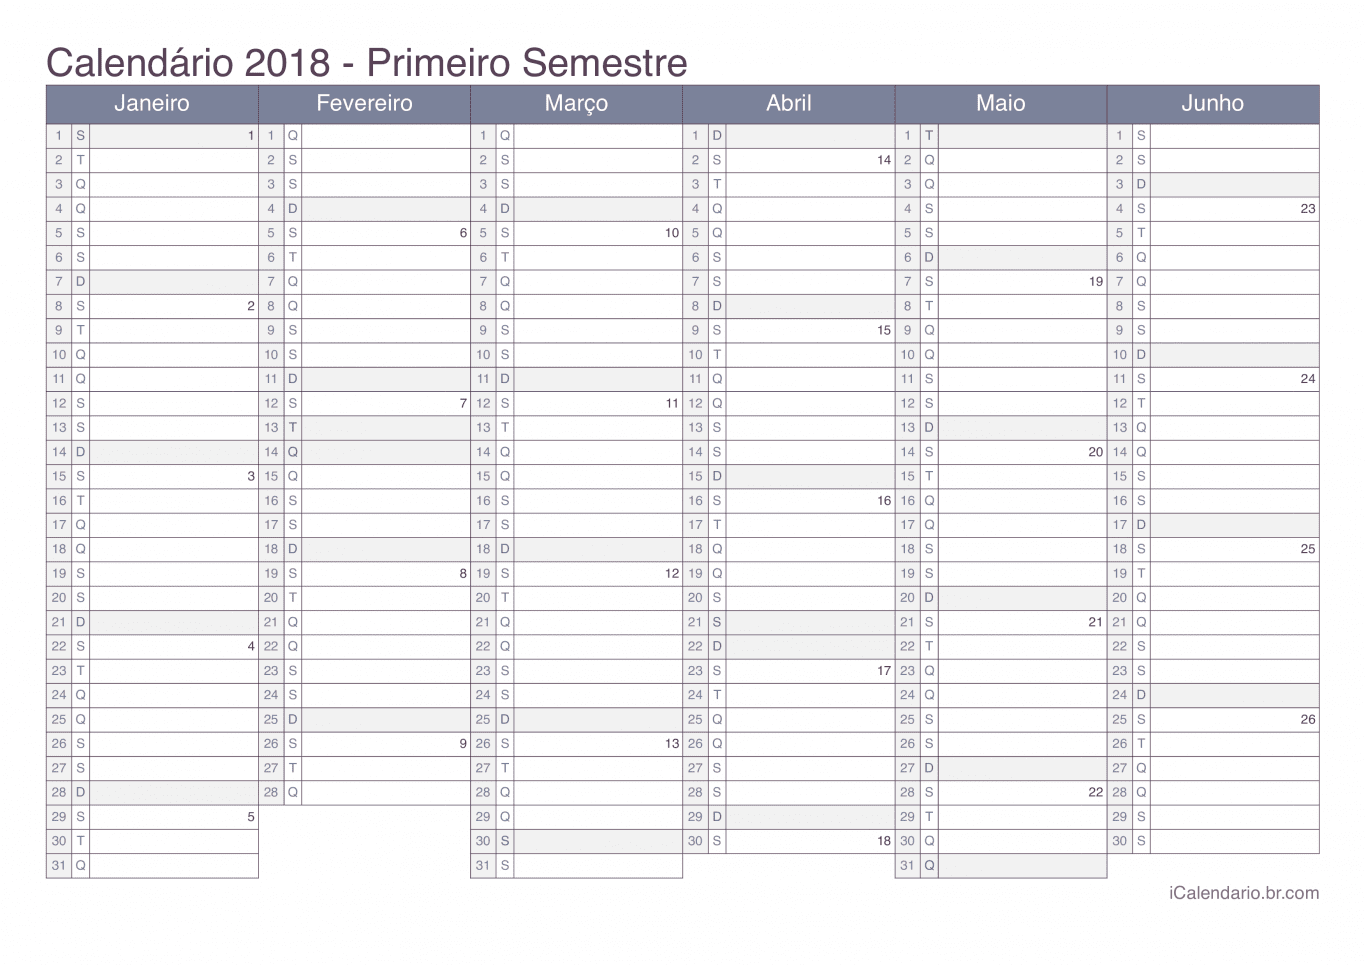 Calendário por semestre com números da semana 2018 - Office